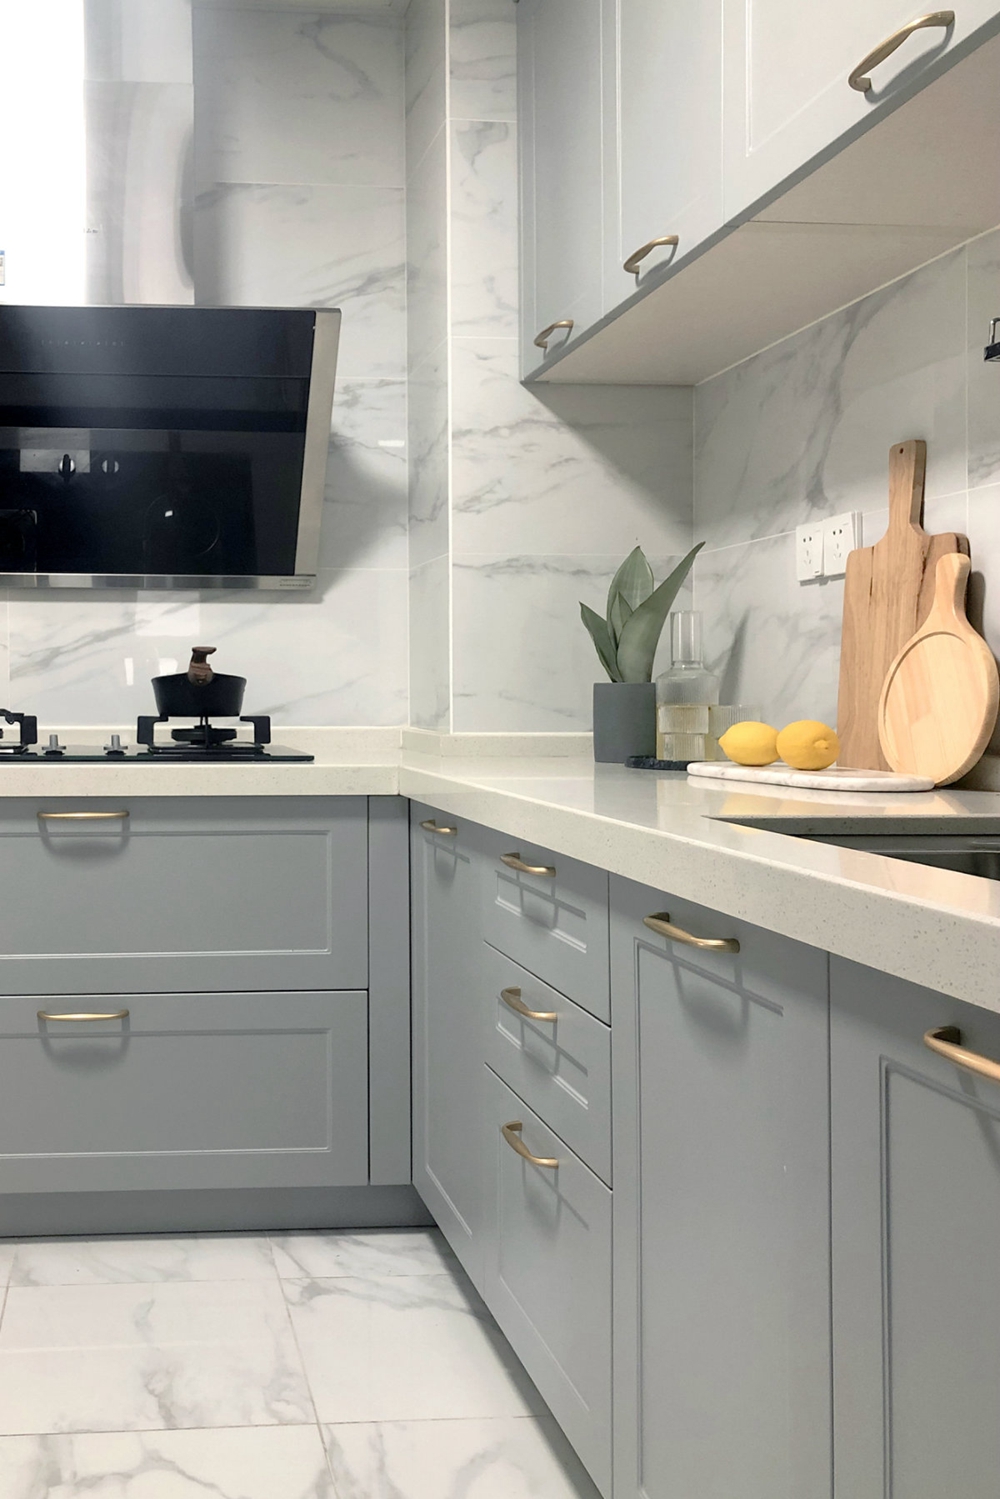 厨房空间u型布局橱柜,造型设计简洁,收纳能力非常不错,烹饪时舒适性较